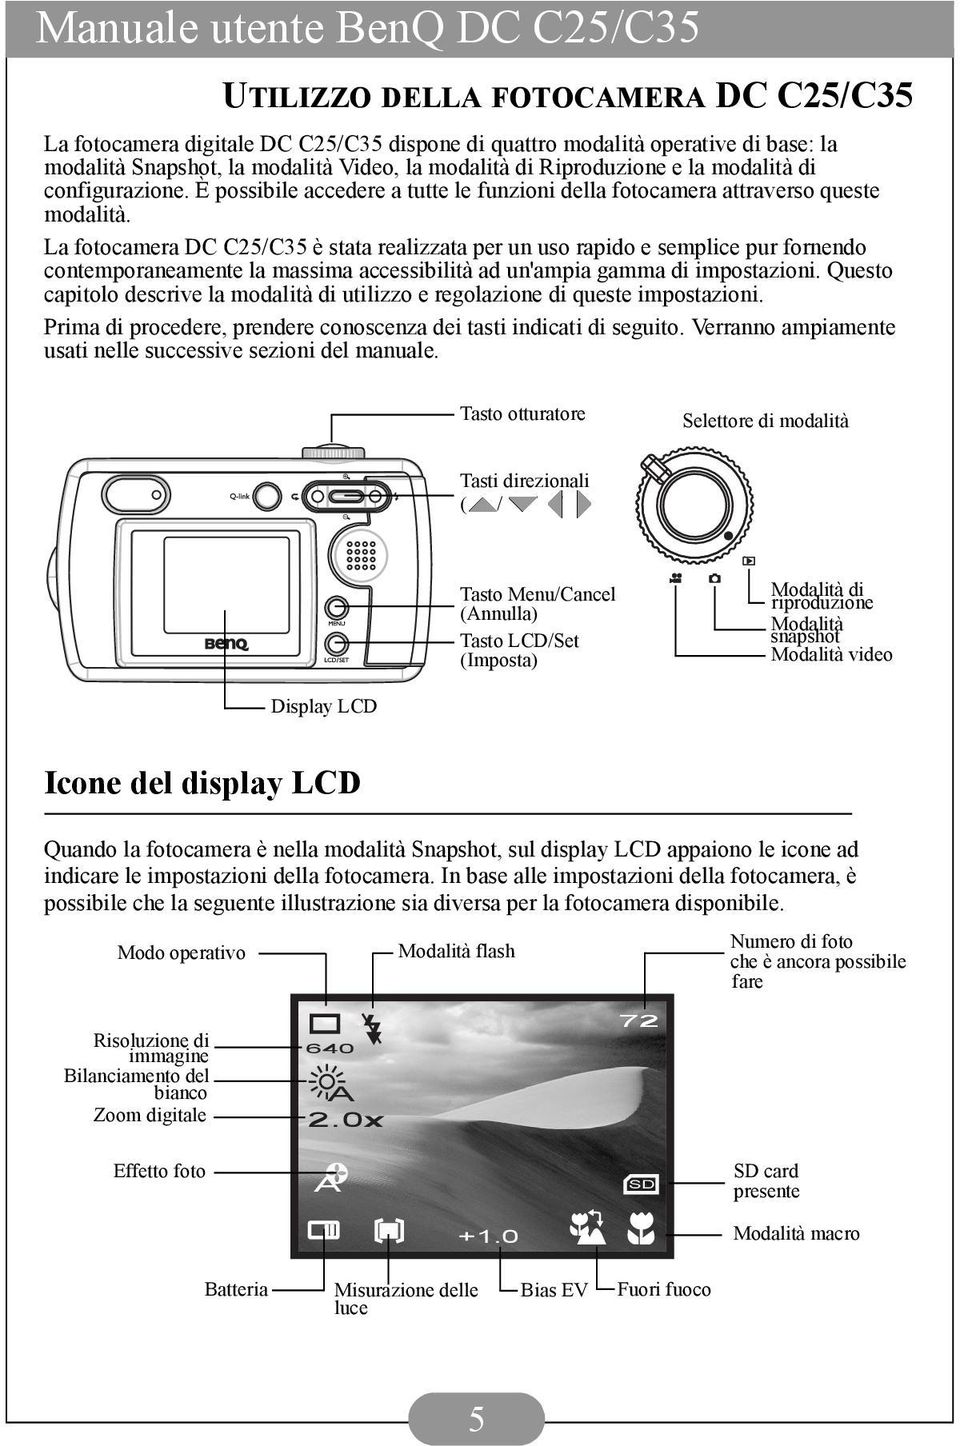 La fotocamera DC C25/C35 è stata realizzata per un uso rapido e semplice pur fornendo contemporaneamente la massima accessibilità ad un'ampia gamma di impostazioni.